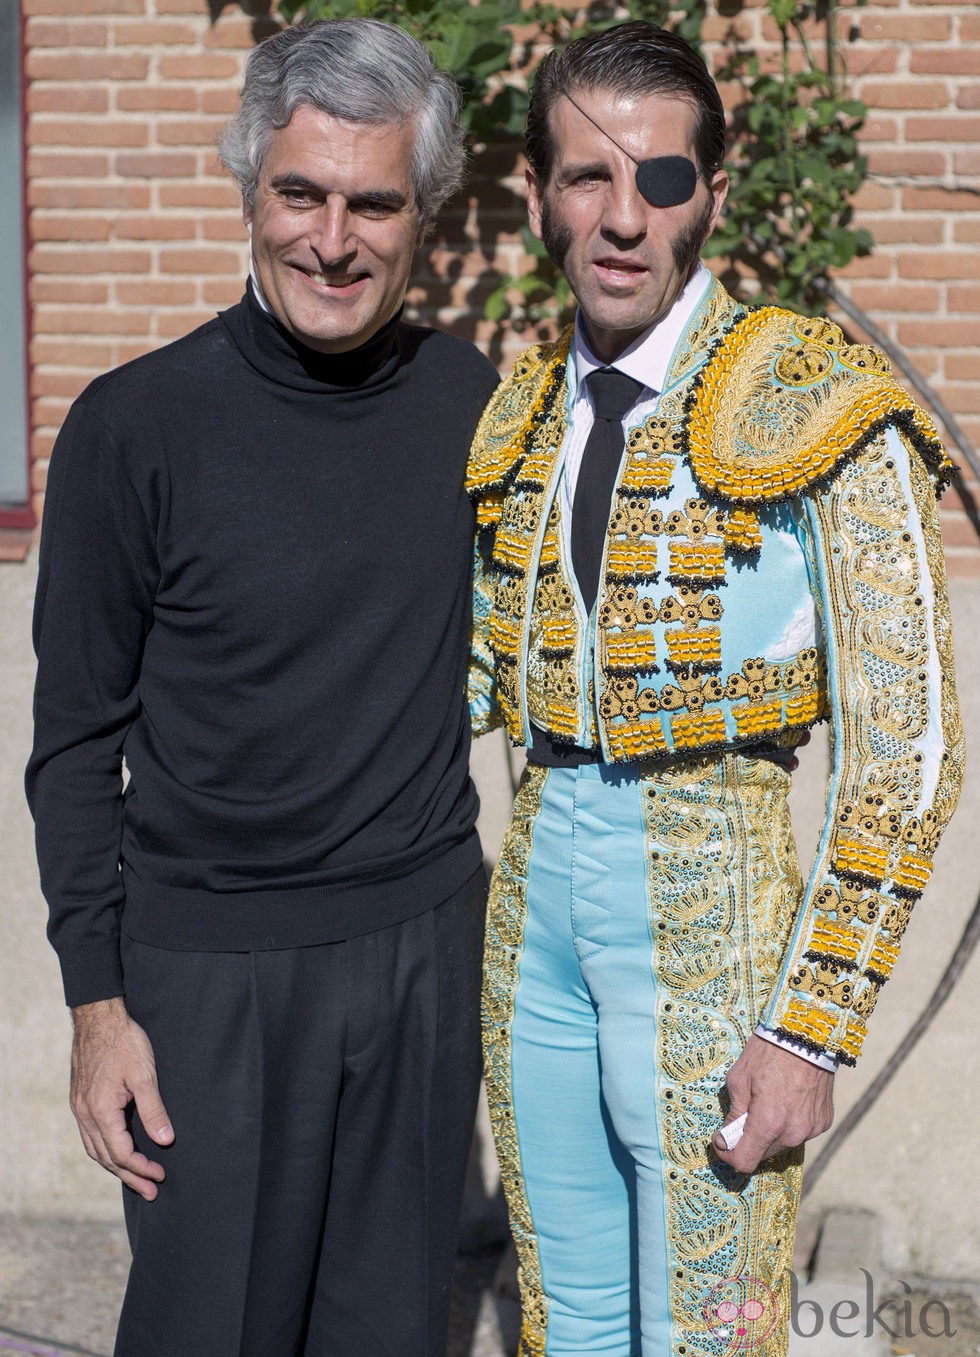 Adolfo Suárez Illana y Juan José Padilla en la plaza de toros de Las Ventas